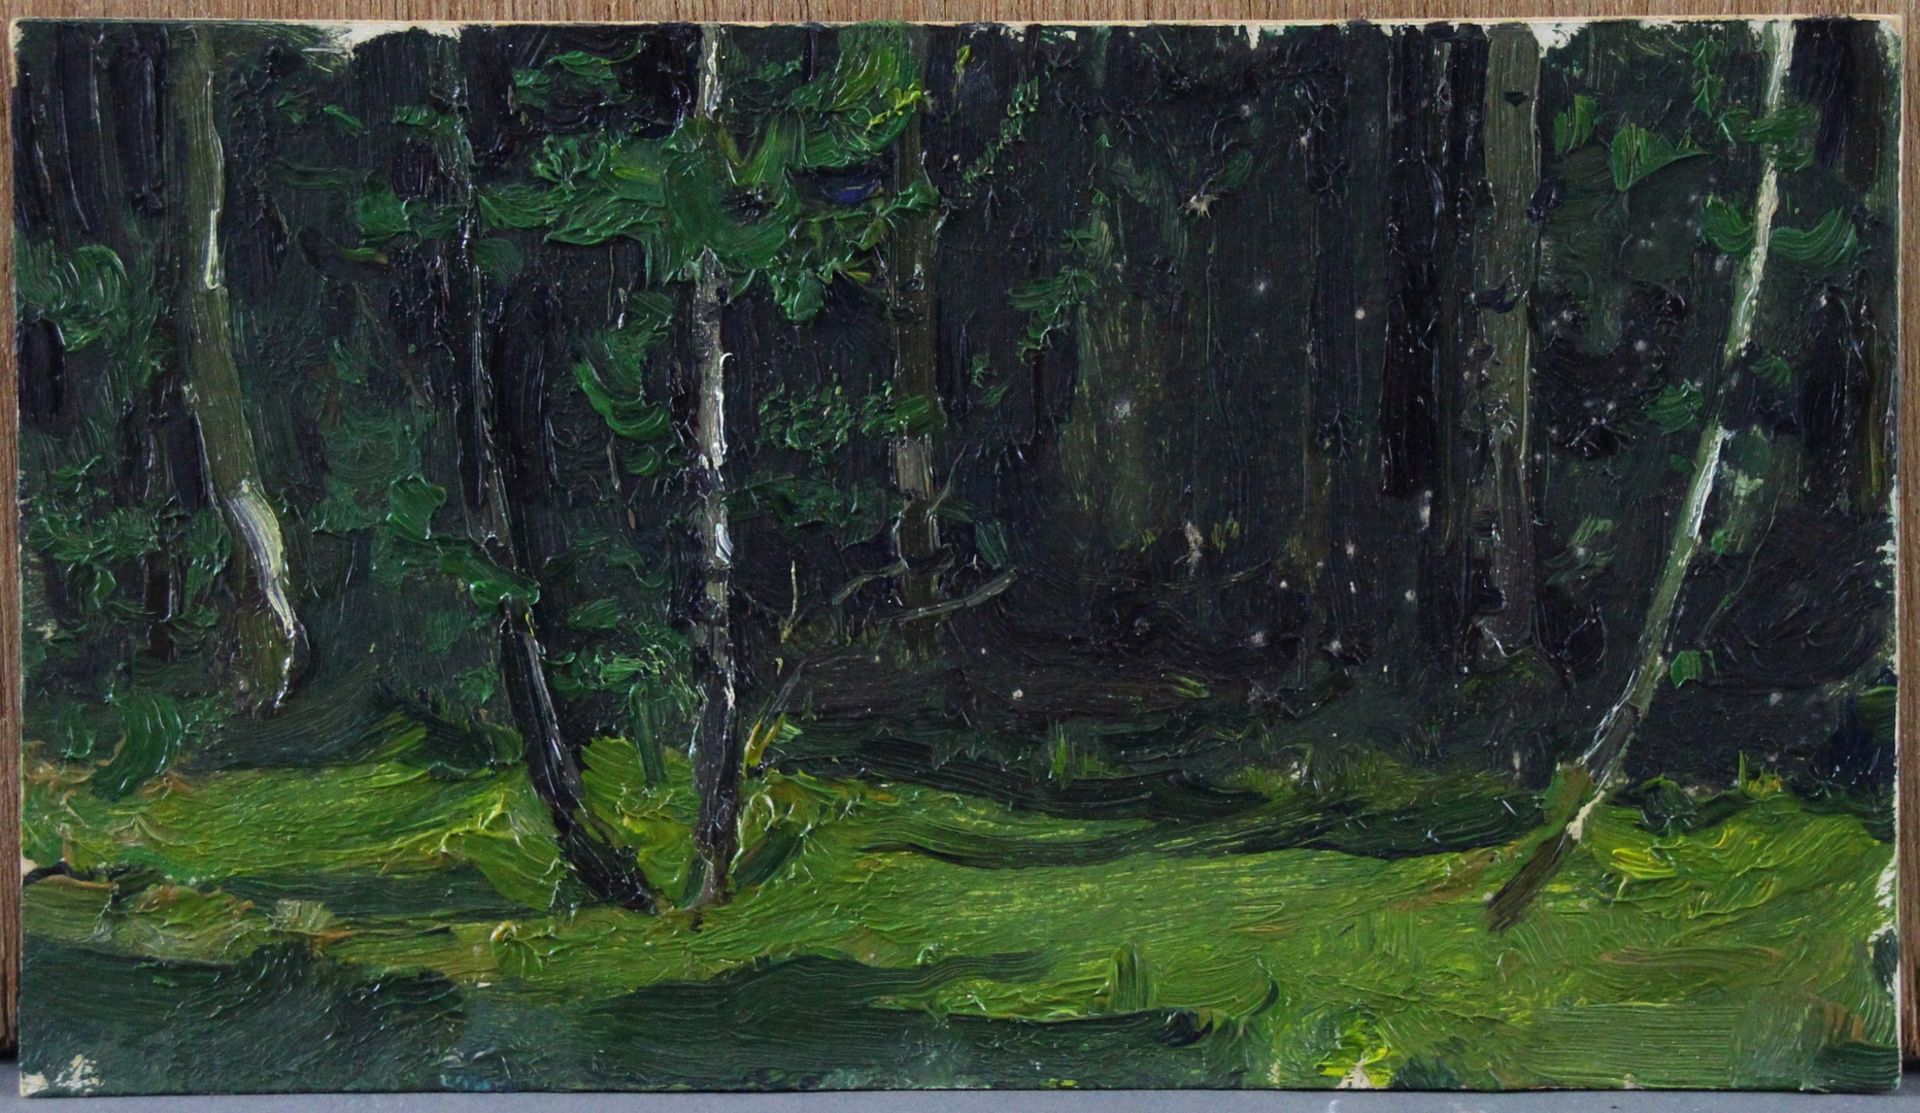 Wladimir Antonowitsch Belonowitsch (1924 - 1995) - ÖL/MK., "Waldlichtung", 1987 , verso signiert,